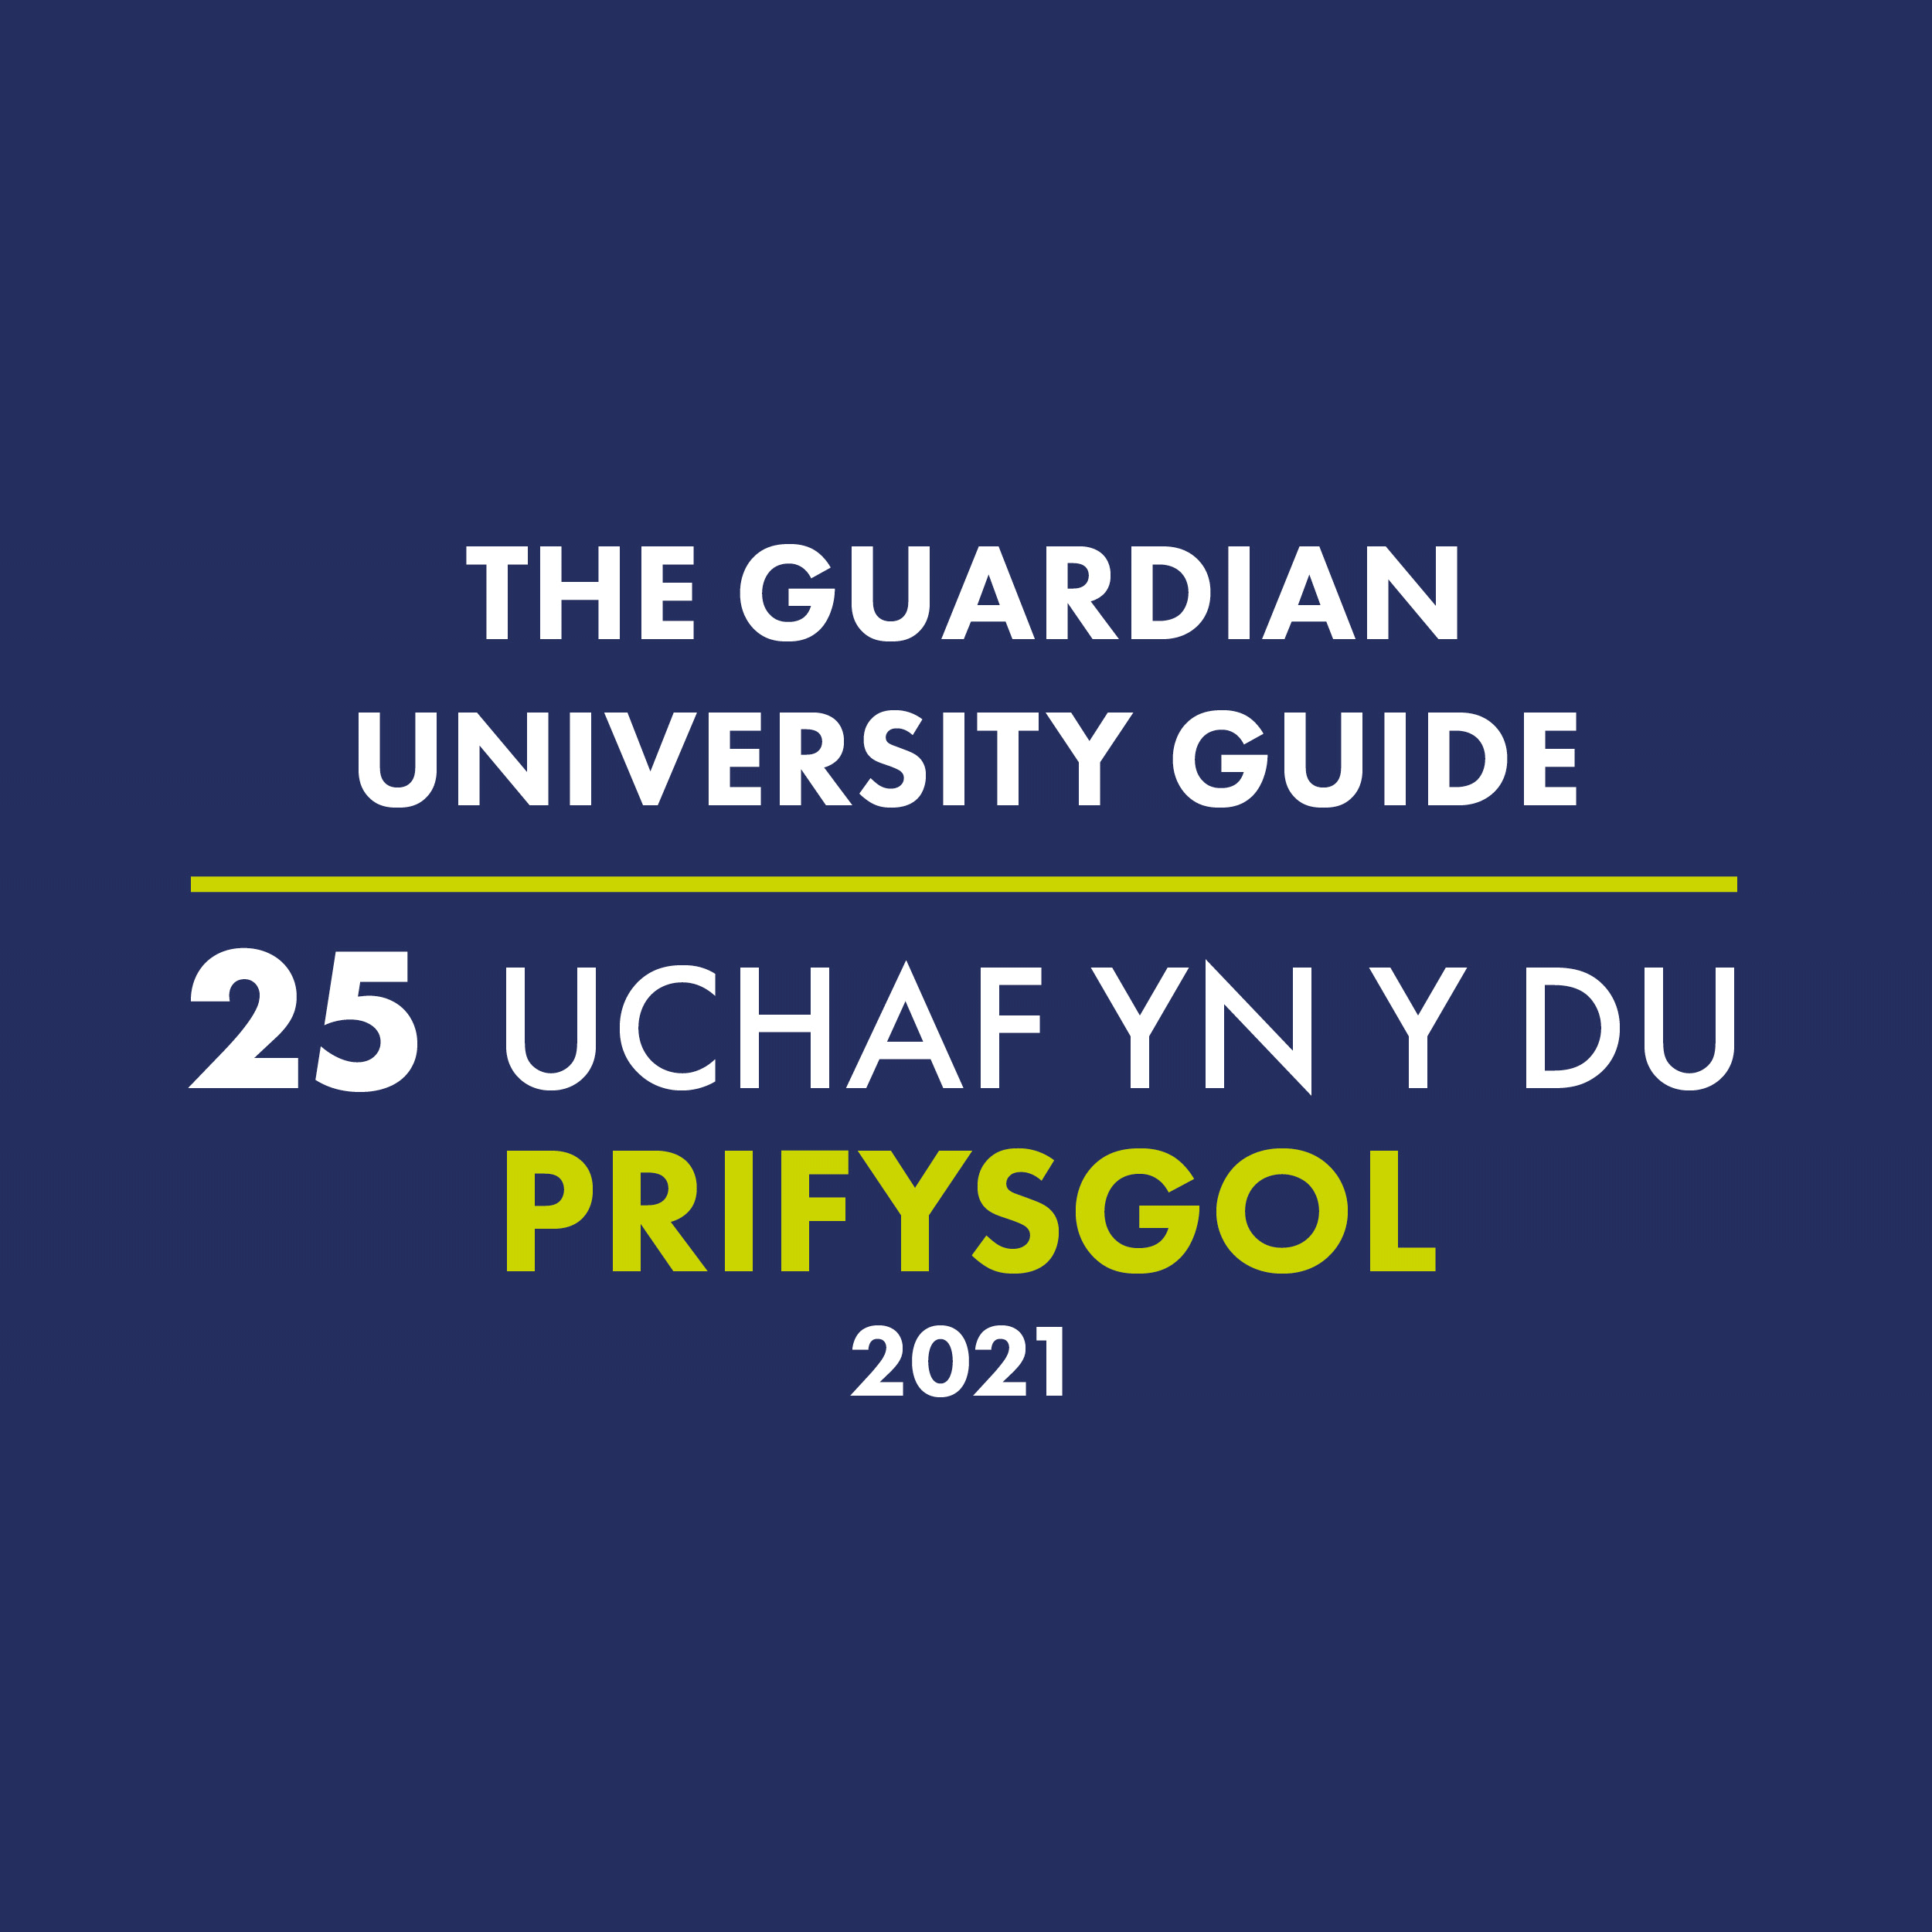 The Guardian University Guide - 25 Uchaf yn y du Prifysgol 2021